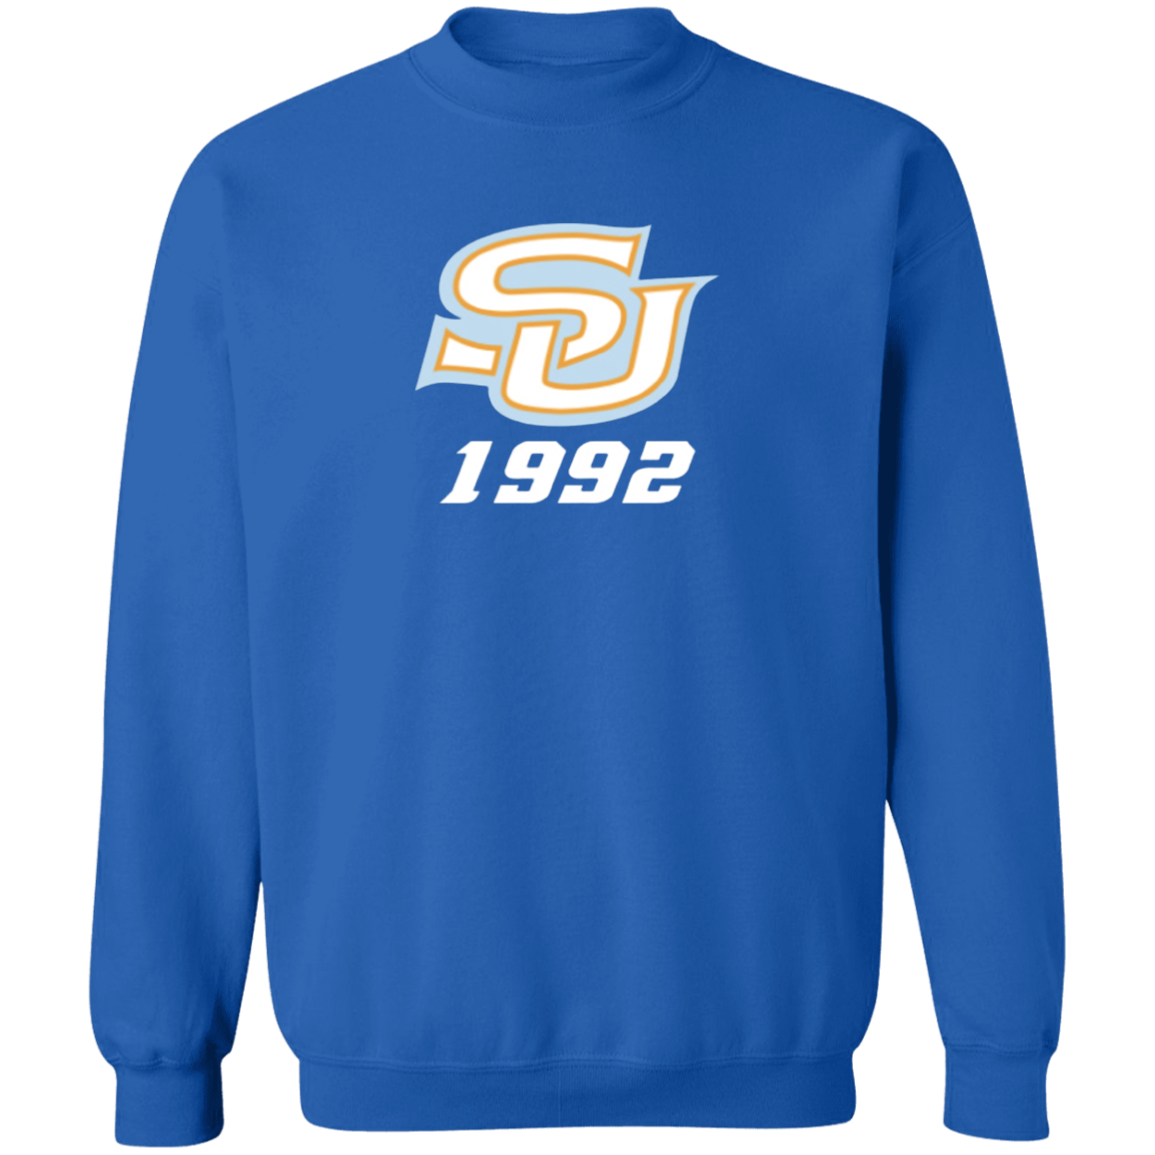 SU c/o 1992  Z65x Pullover Crewneck Sweatshirt 8 oz (Closeout)